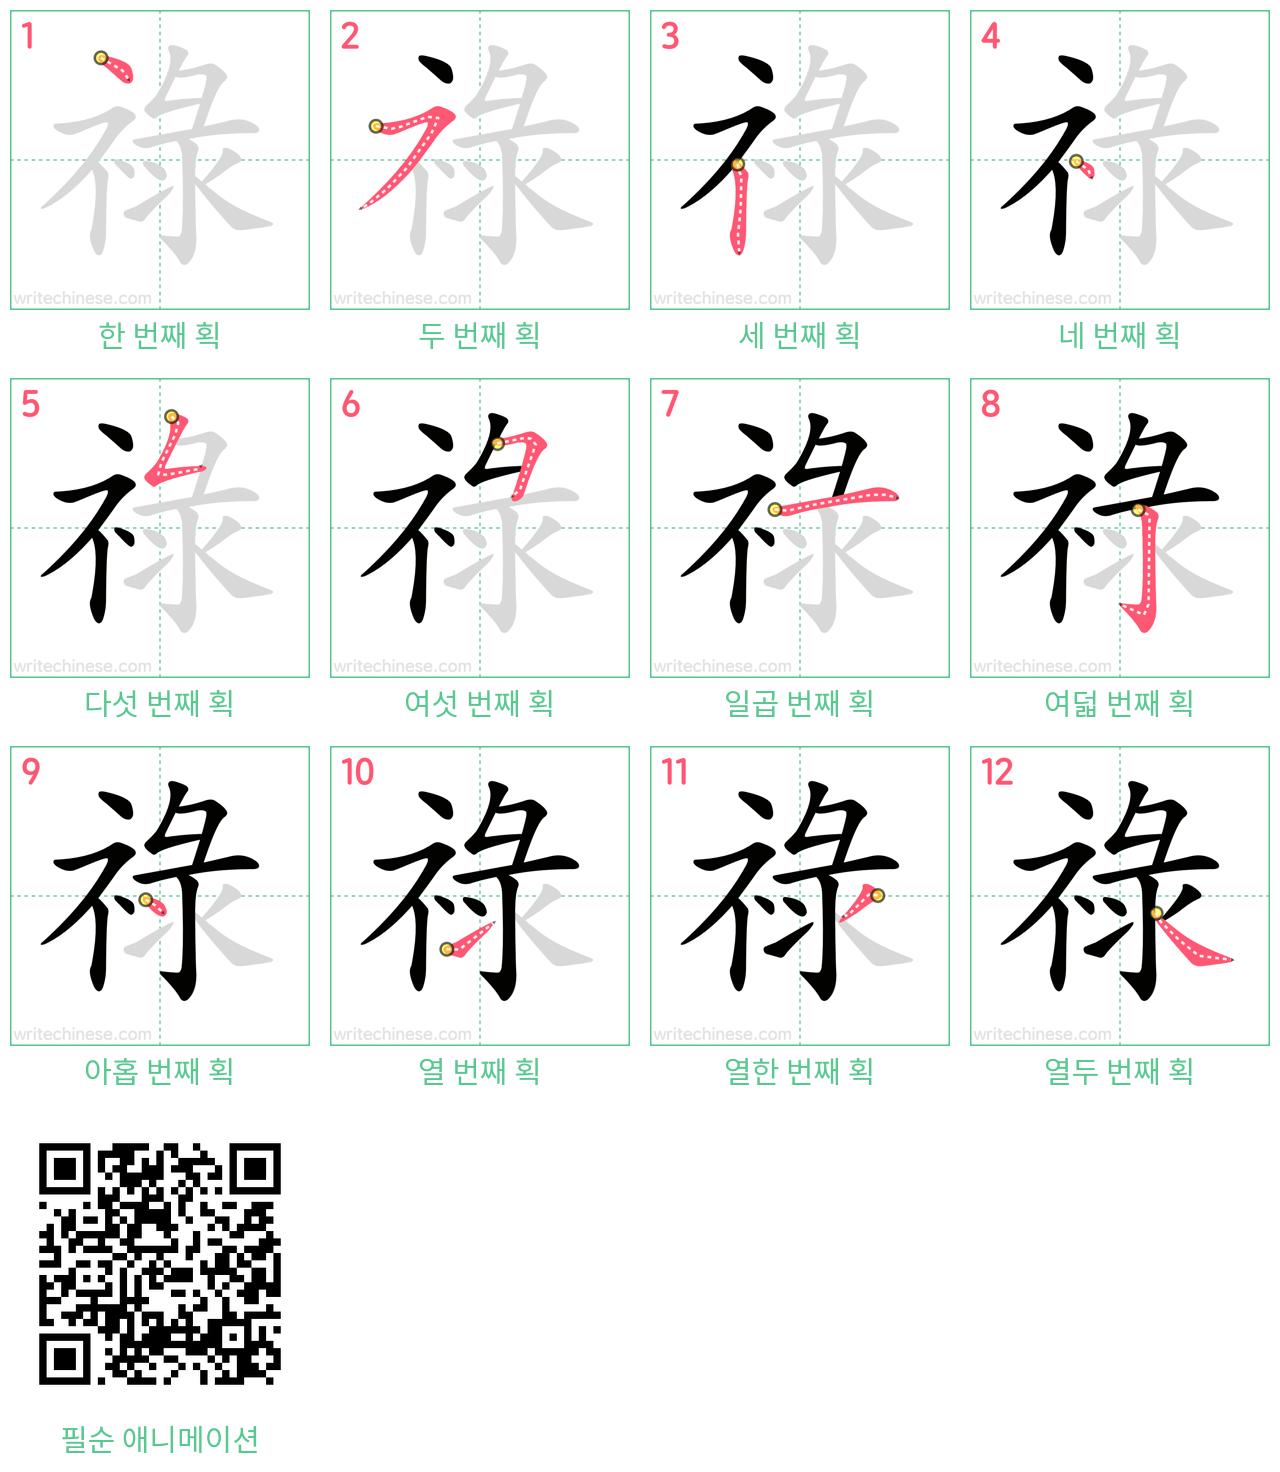 祿 step-by-step stroke order diagrams